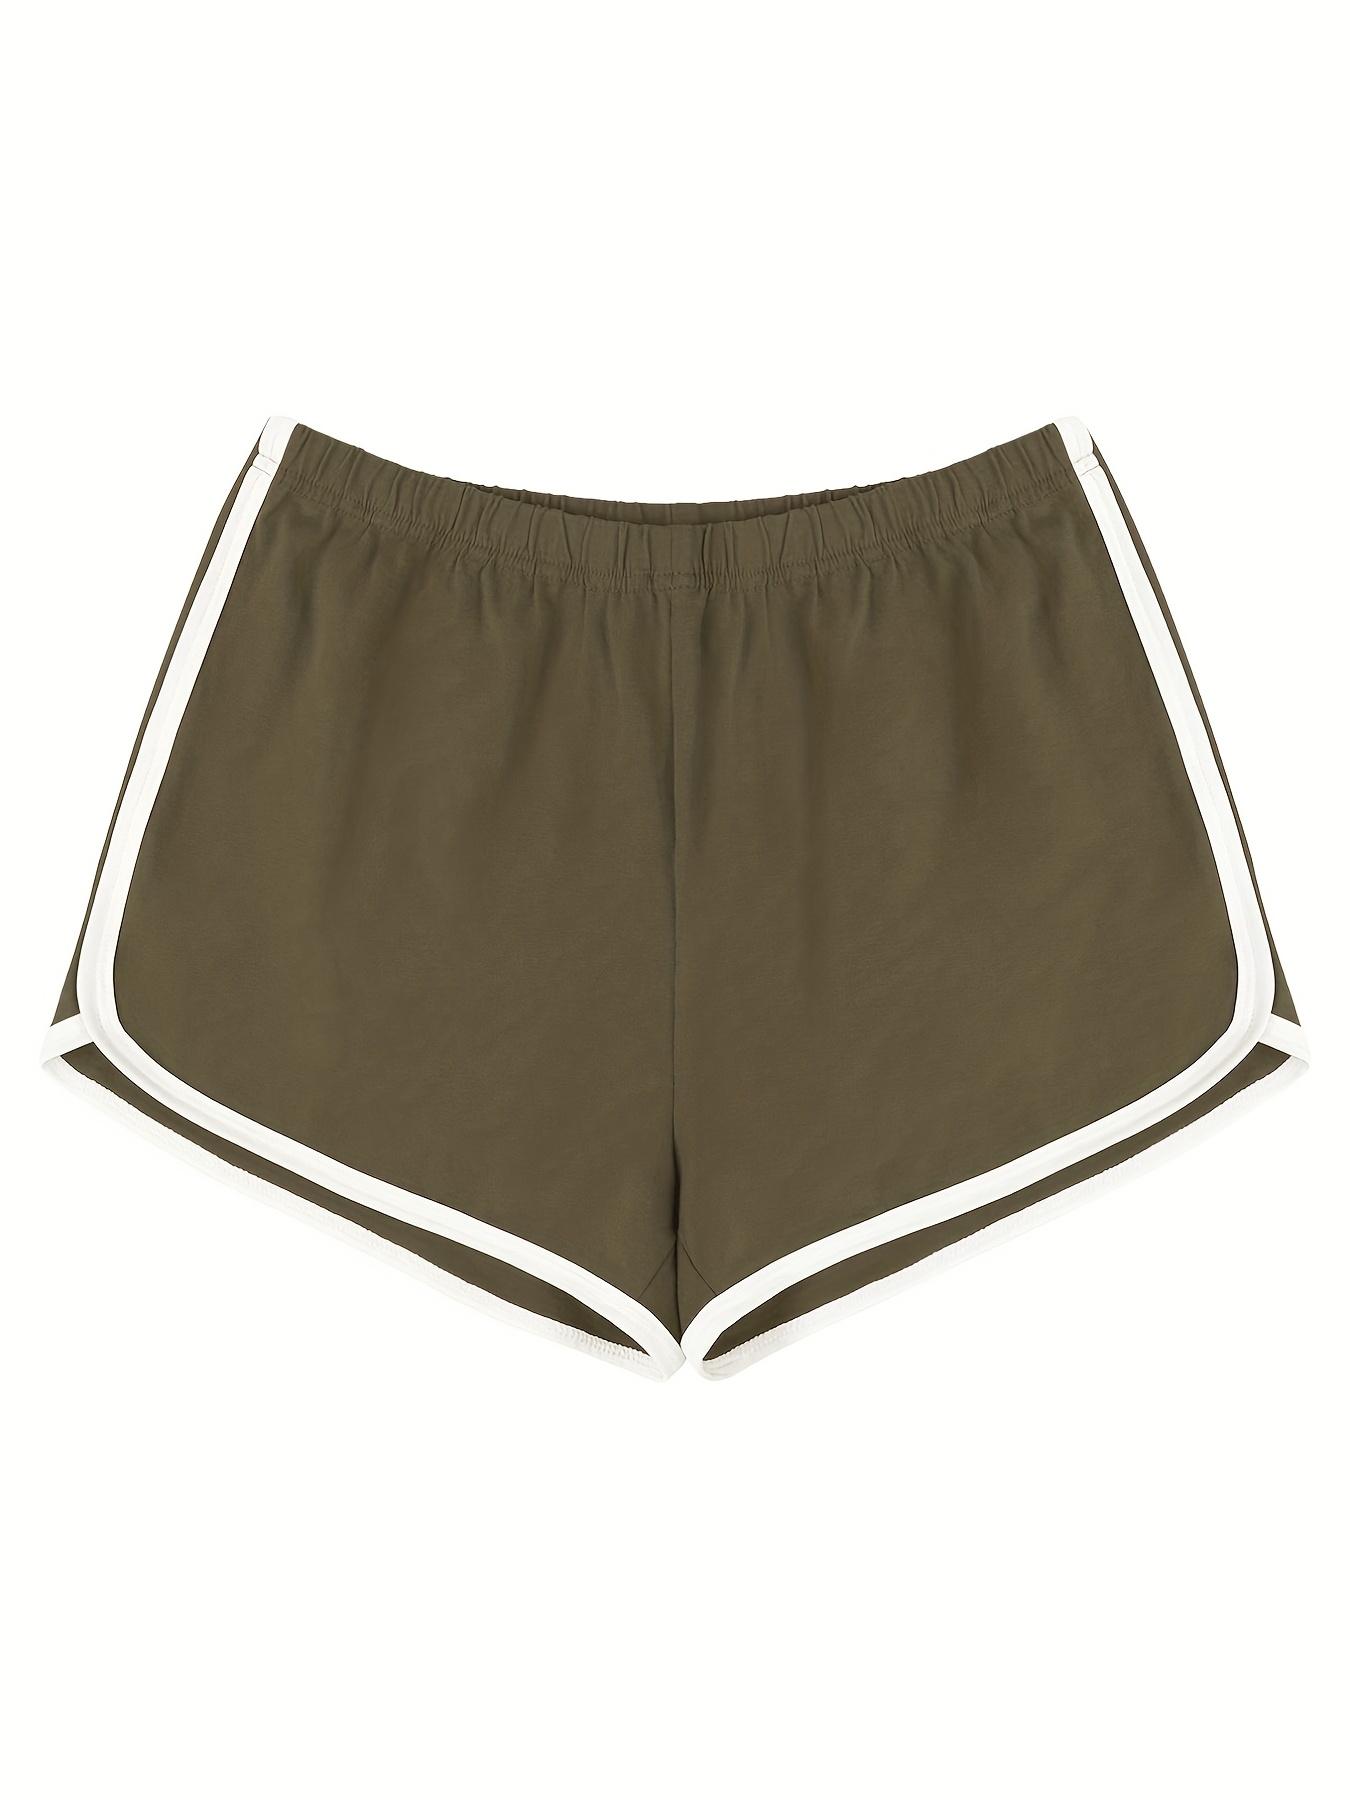 Pantalones cortos de verano para mujer/Shorts deportivos para